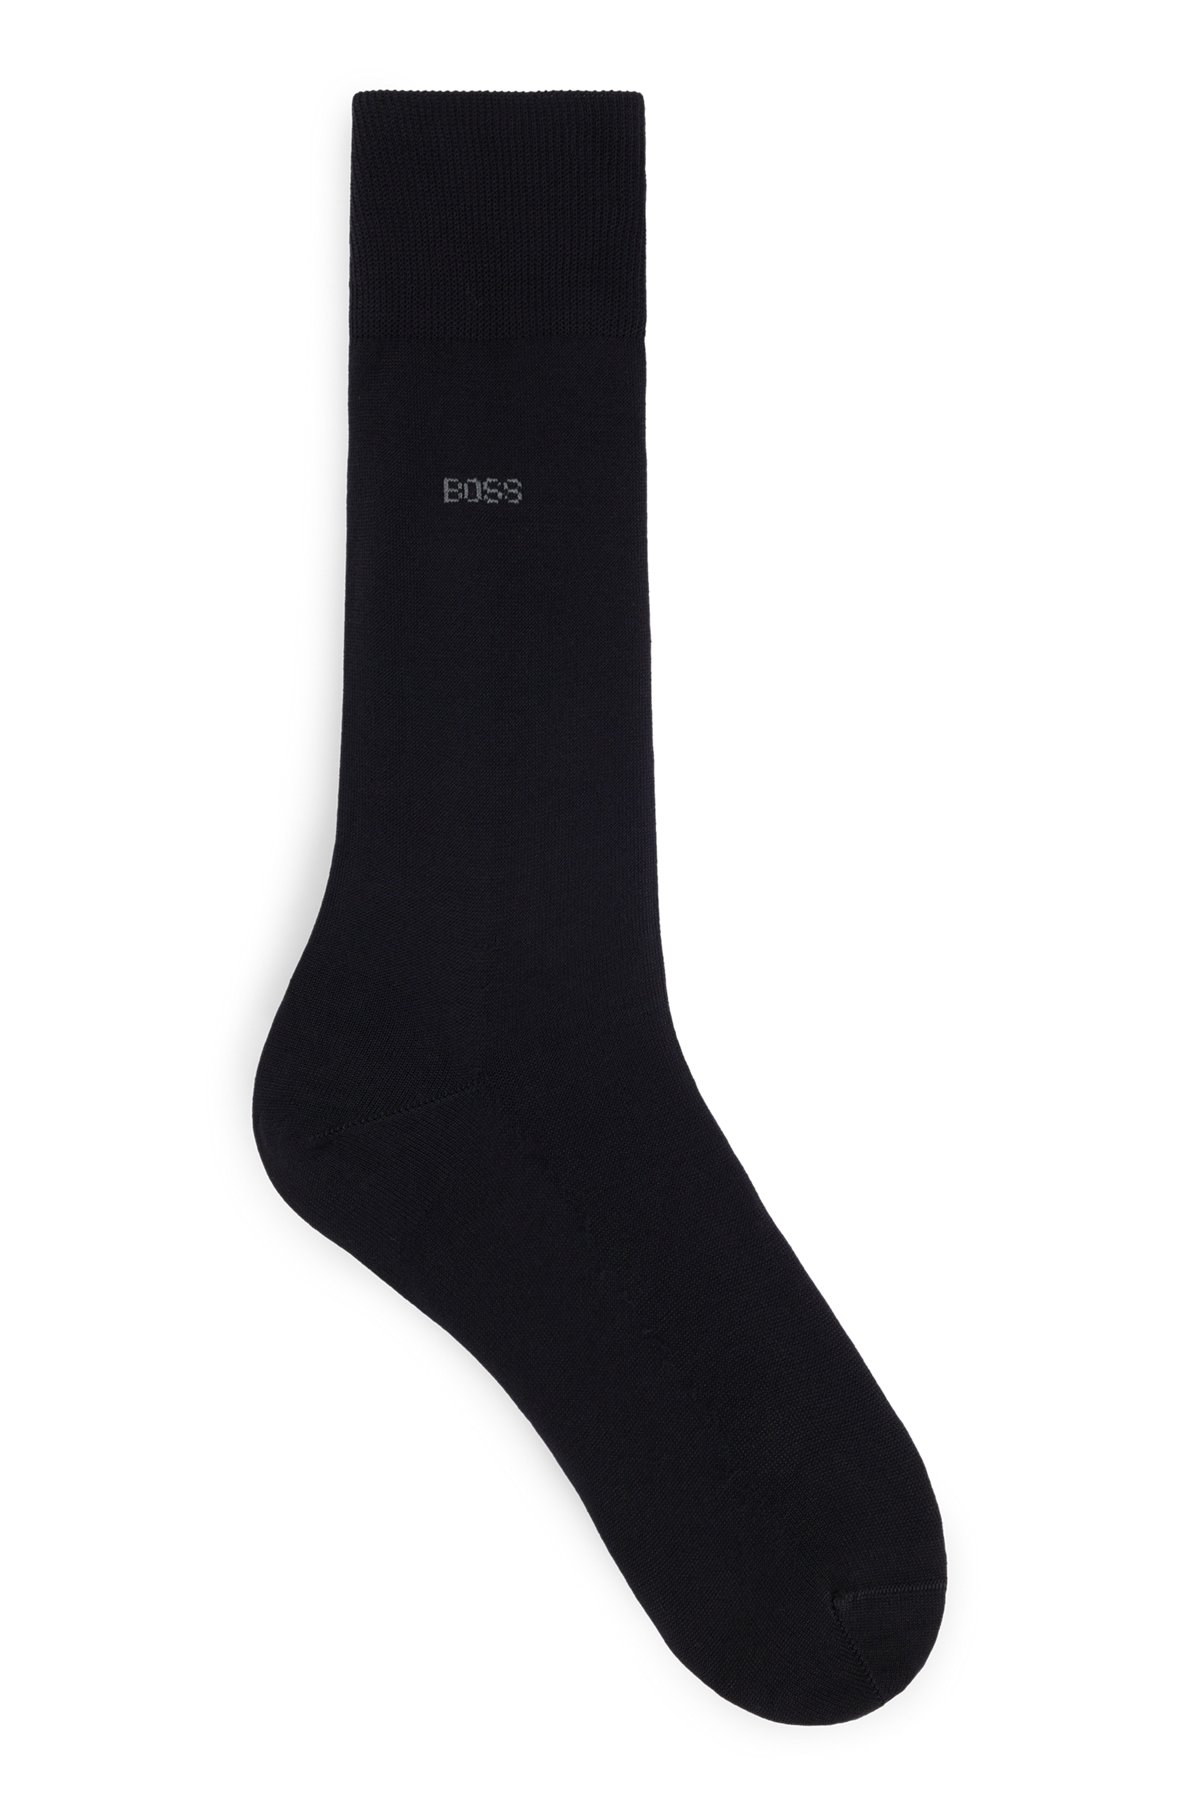 Mittelhohe Logo-Socken aus ägyptischer Baumwolle mit merzerisiertem Finish, Schwarz